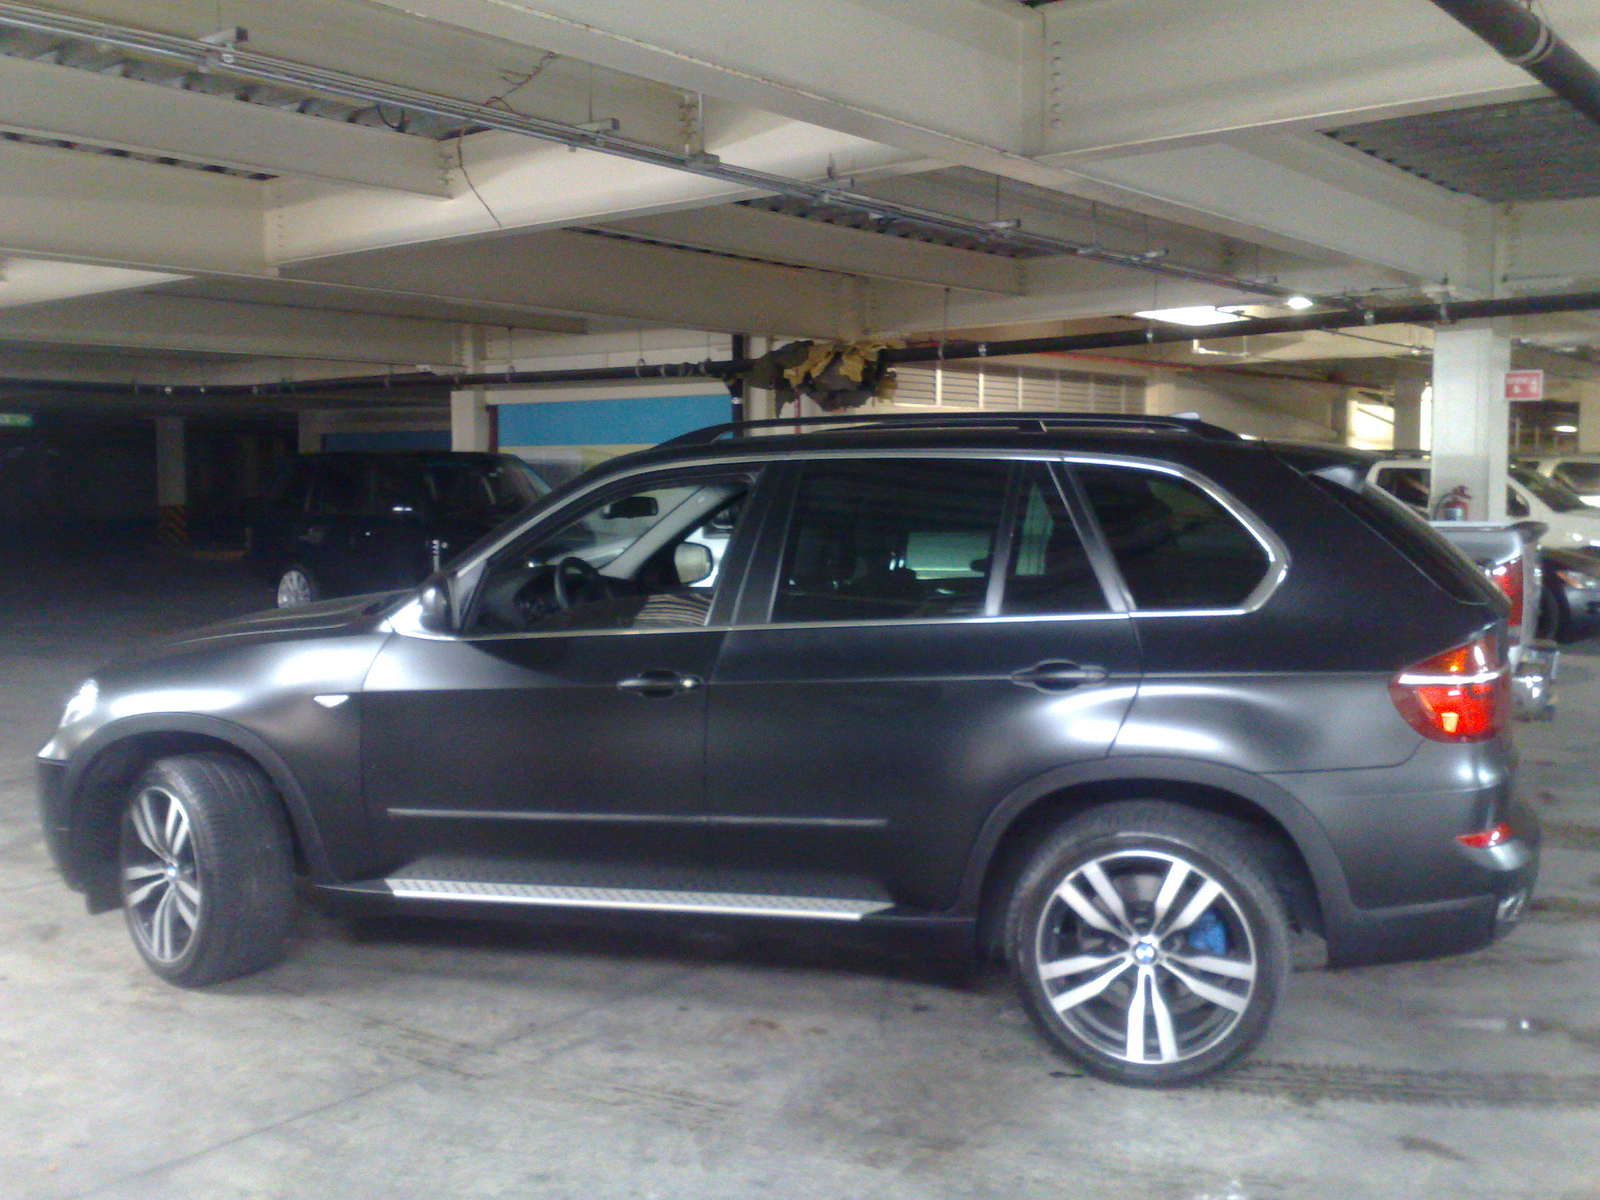 BMW X5 matte black | Flickr - Photo Sharing!